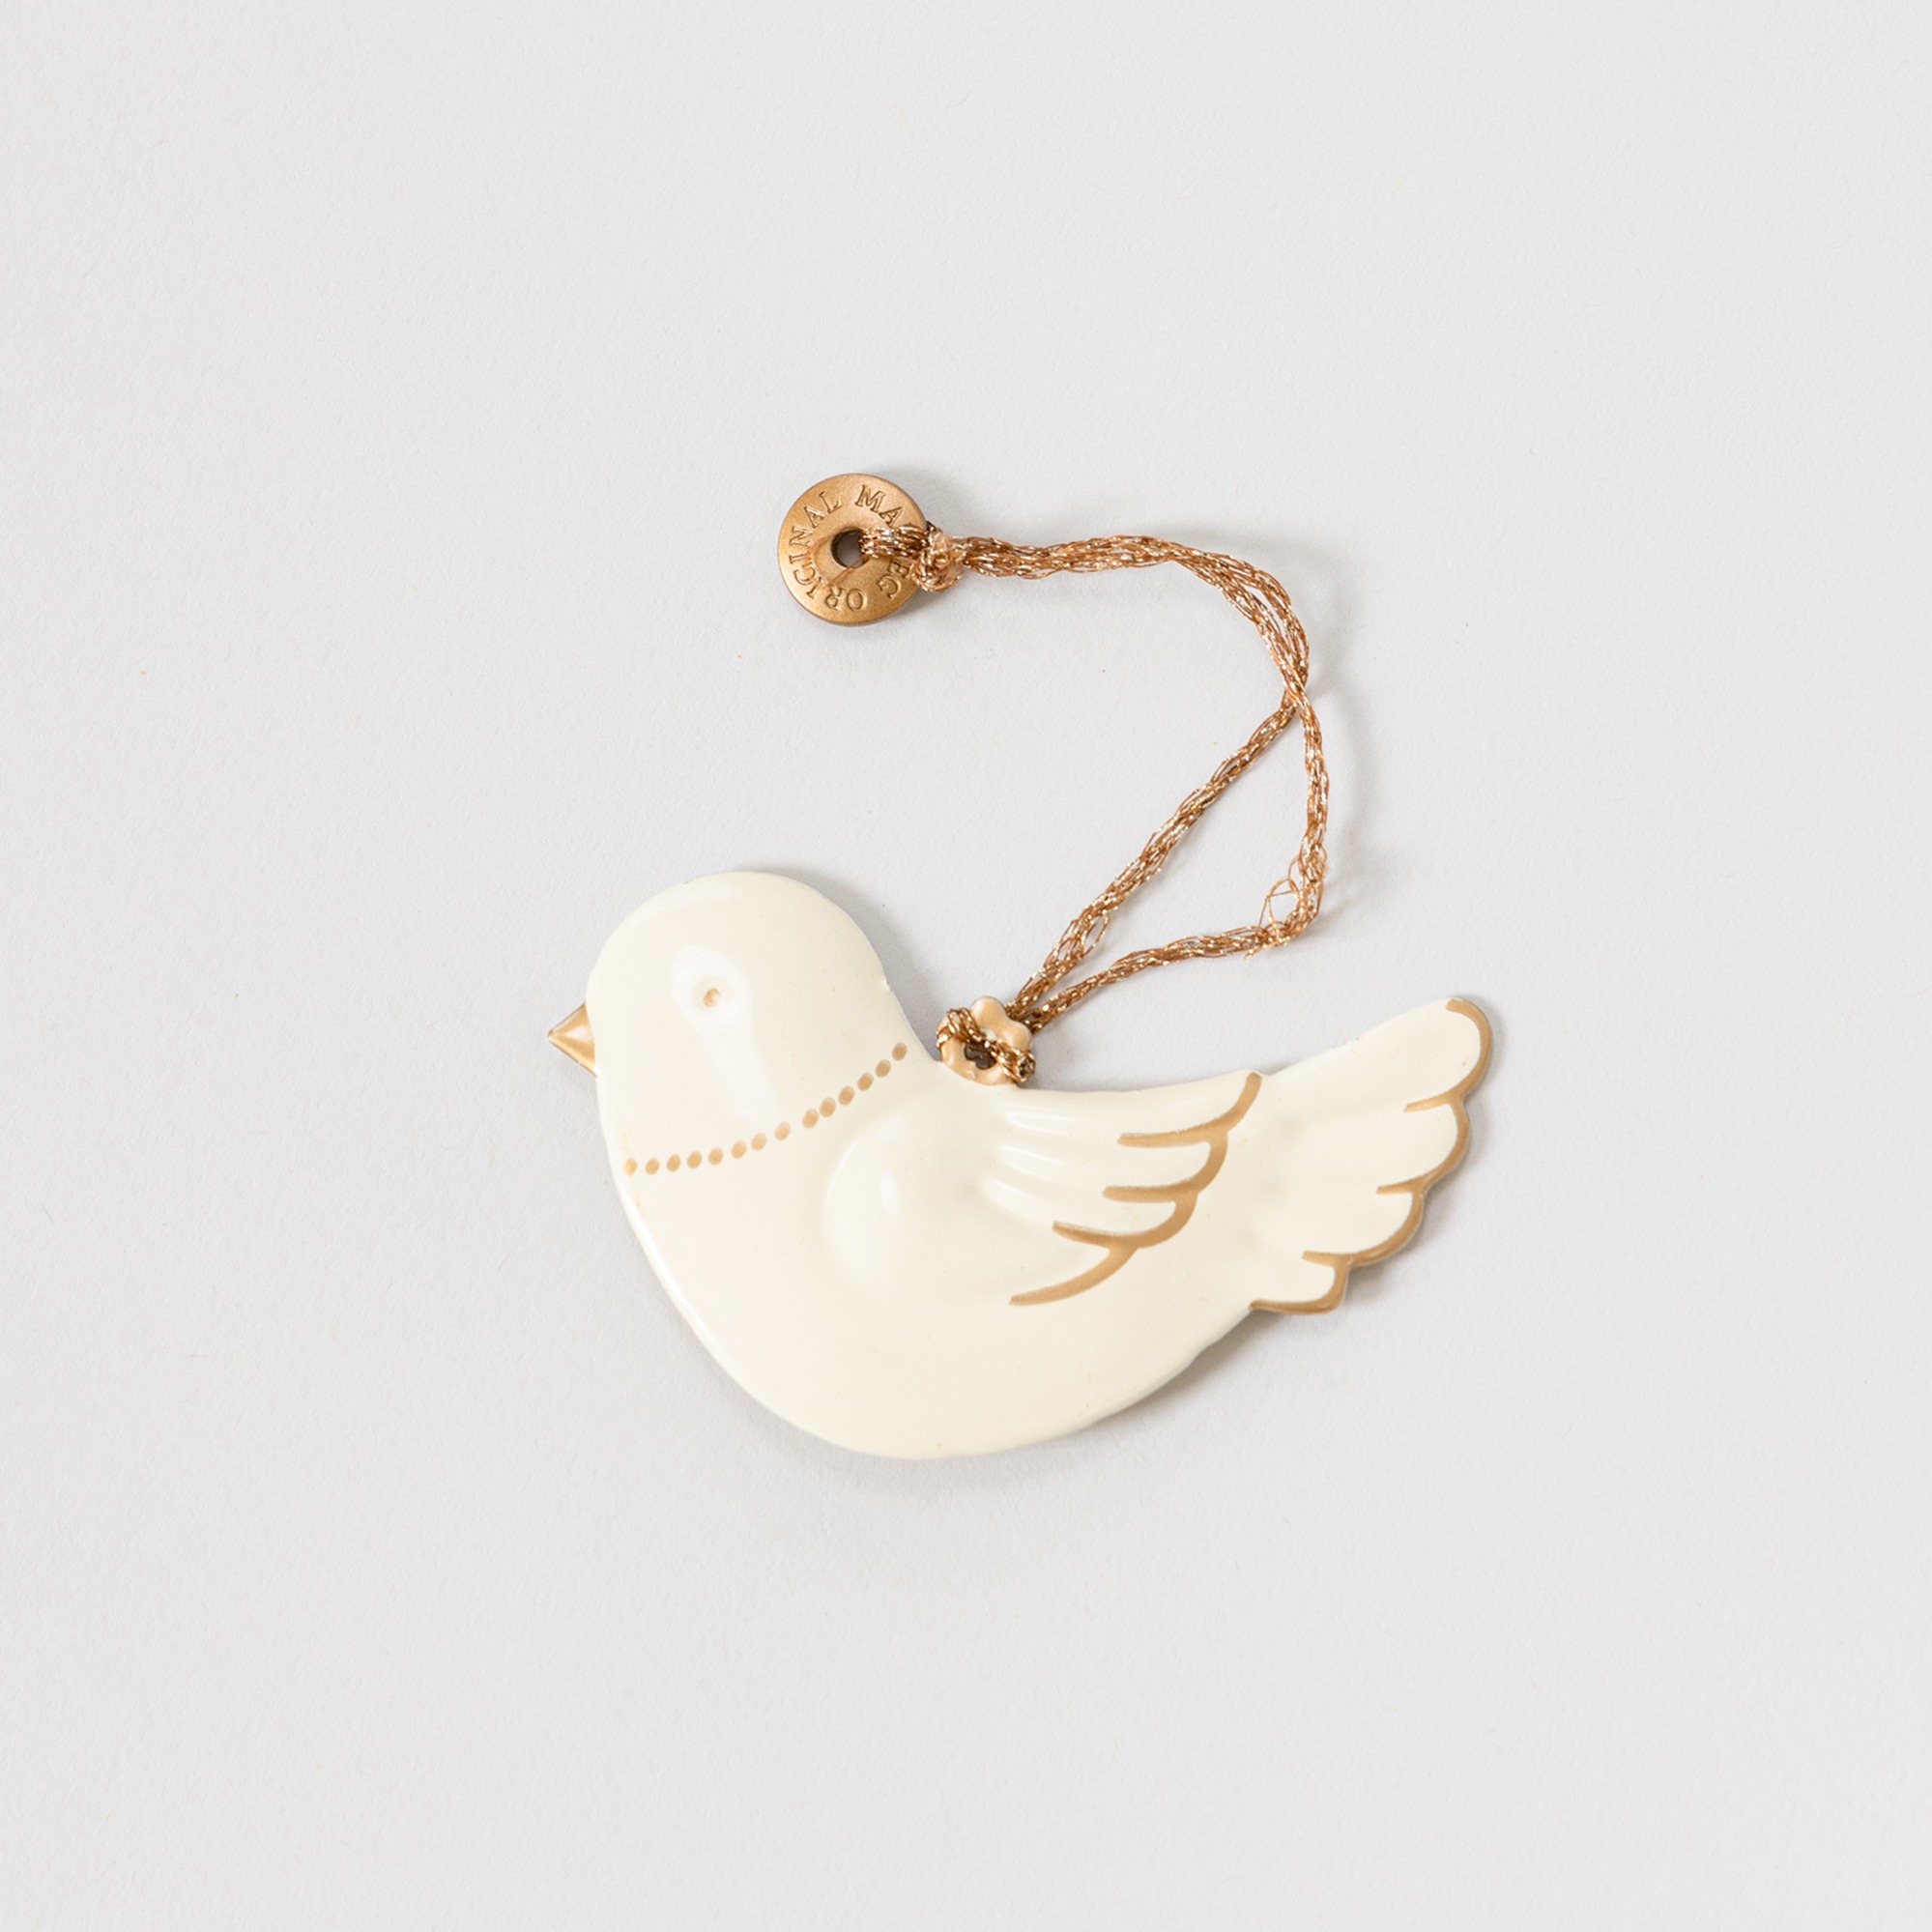 MAILEG Metal ornament, bird